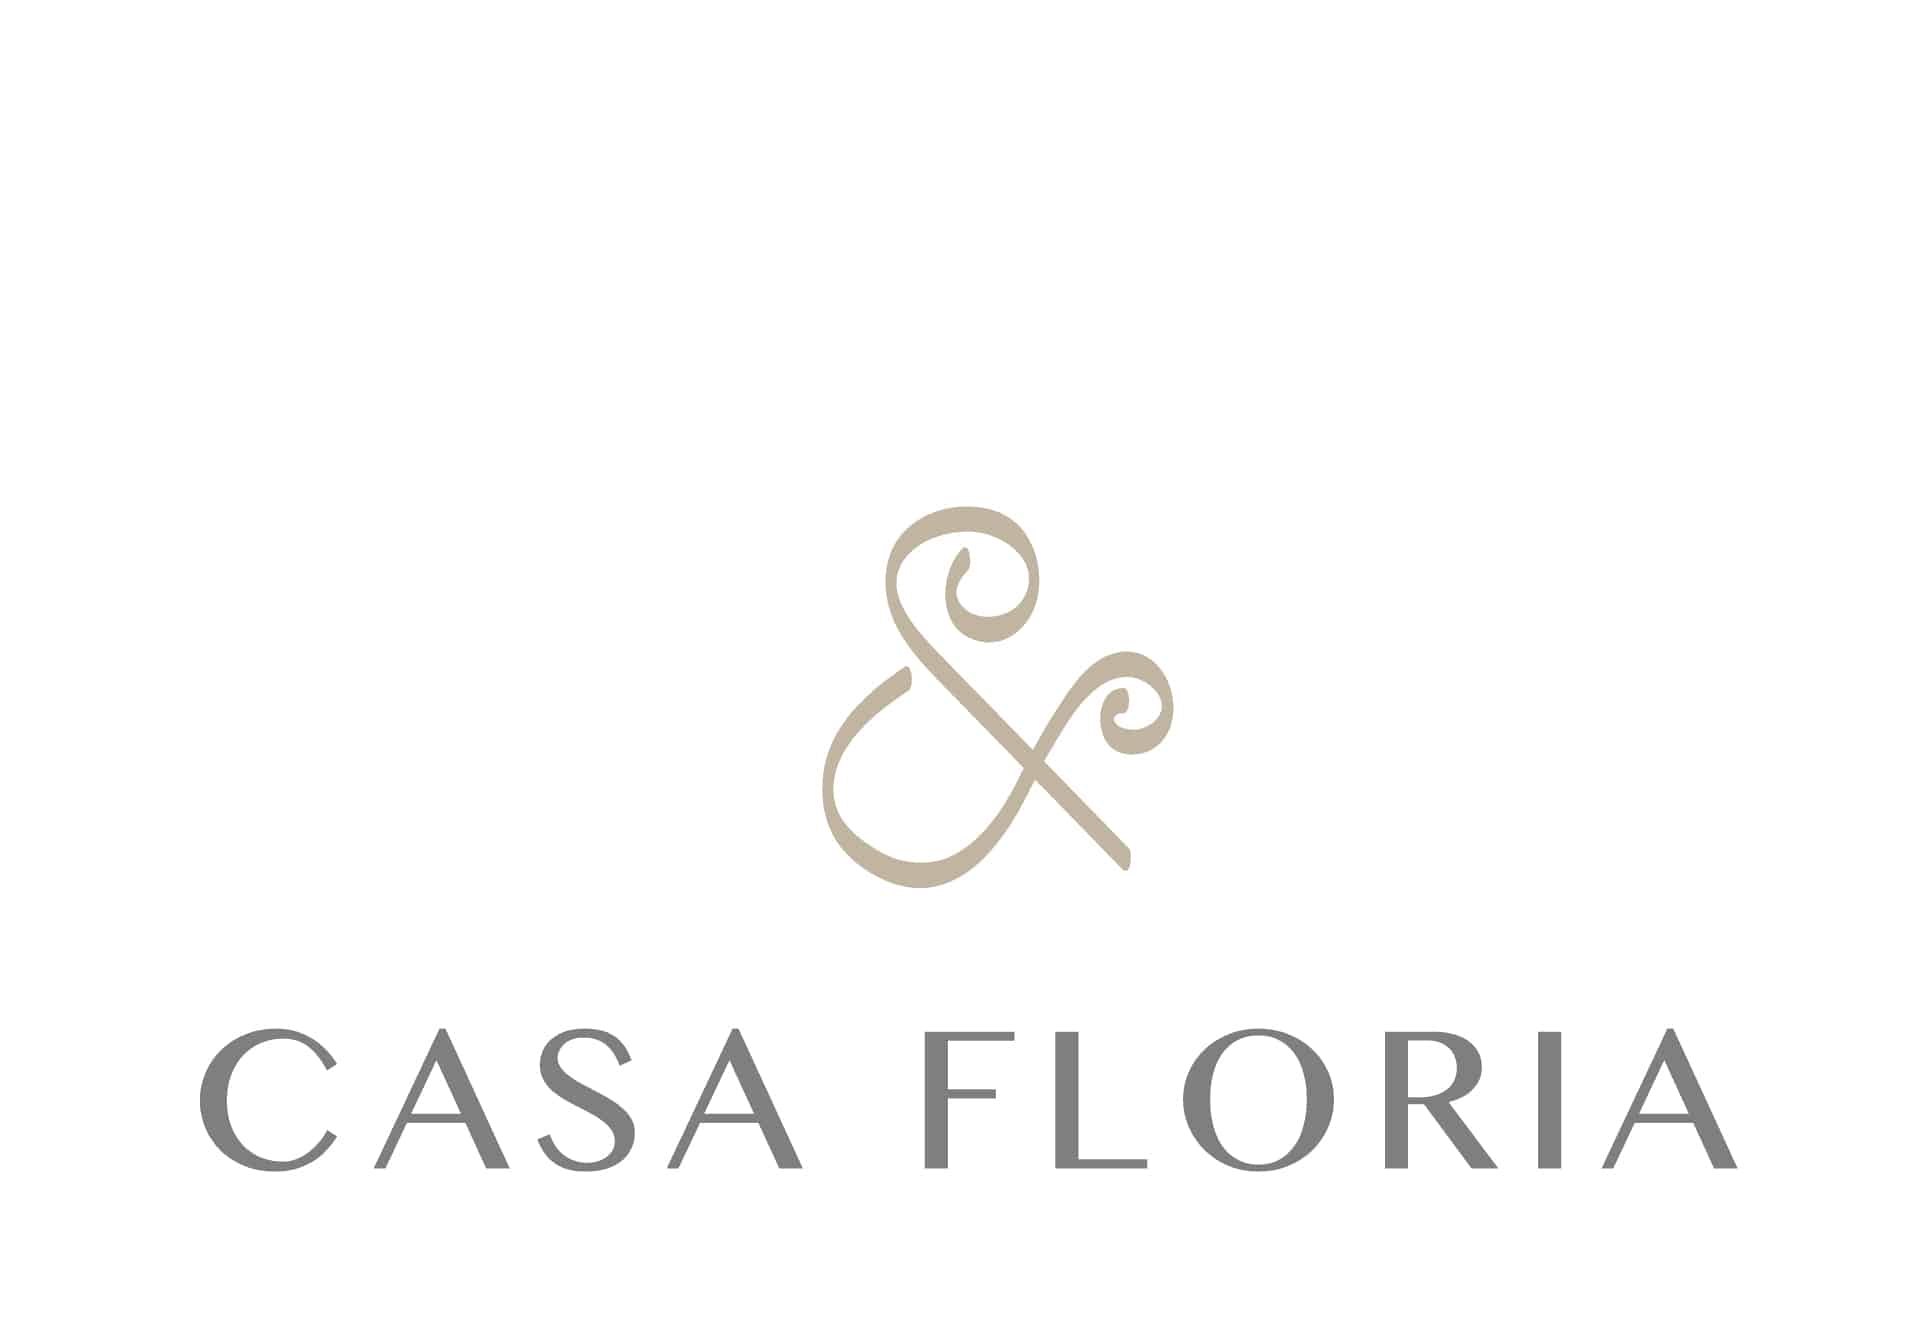 Casa Floria – Lavish floral arrangements and installations for ...